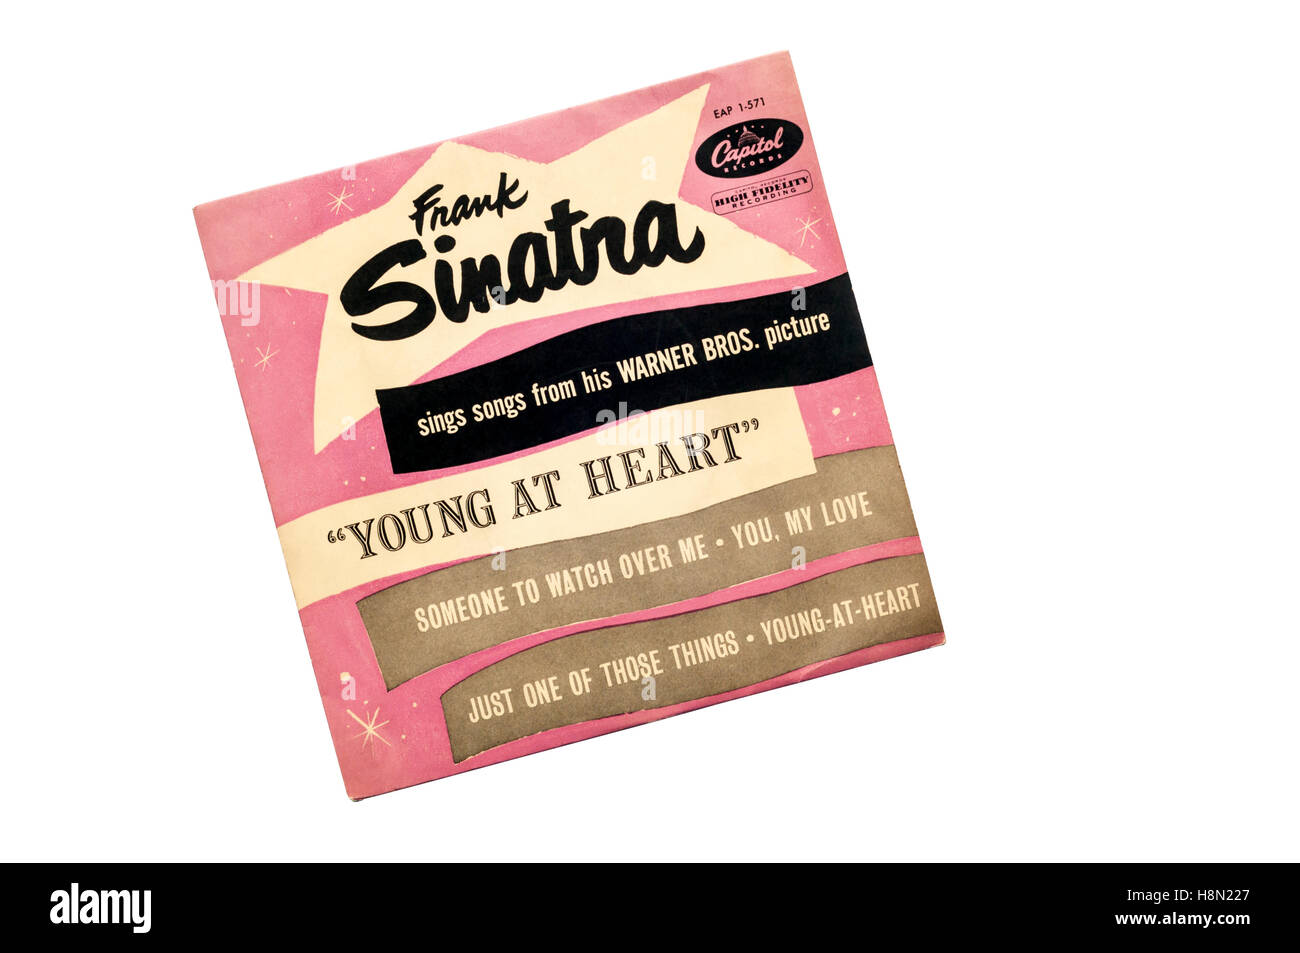 EP di Frank Sinatra canta brani dal suo Warner Bros Immagine "Giovani nel cuore" rilasciato nel 1955 da record di capitale. Foto Stock